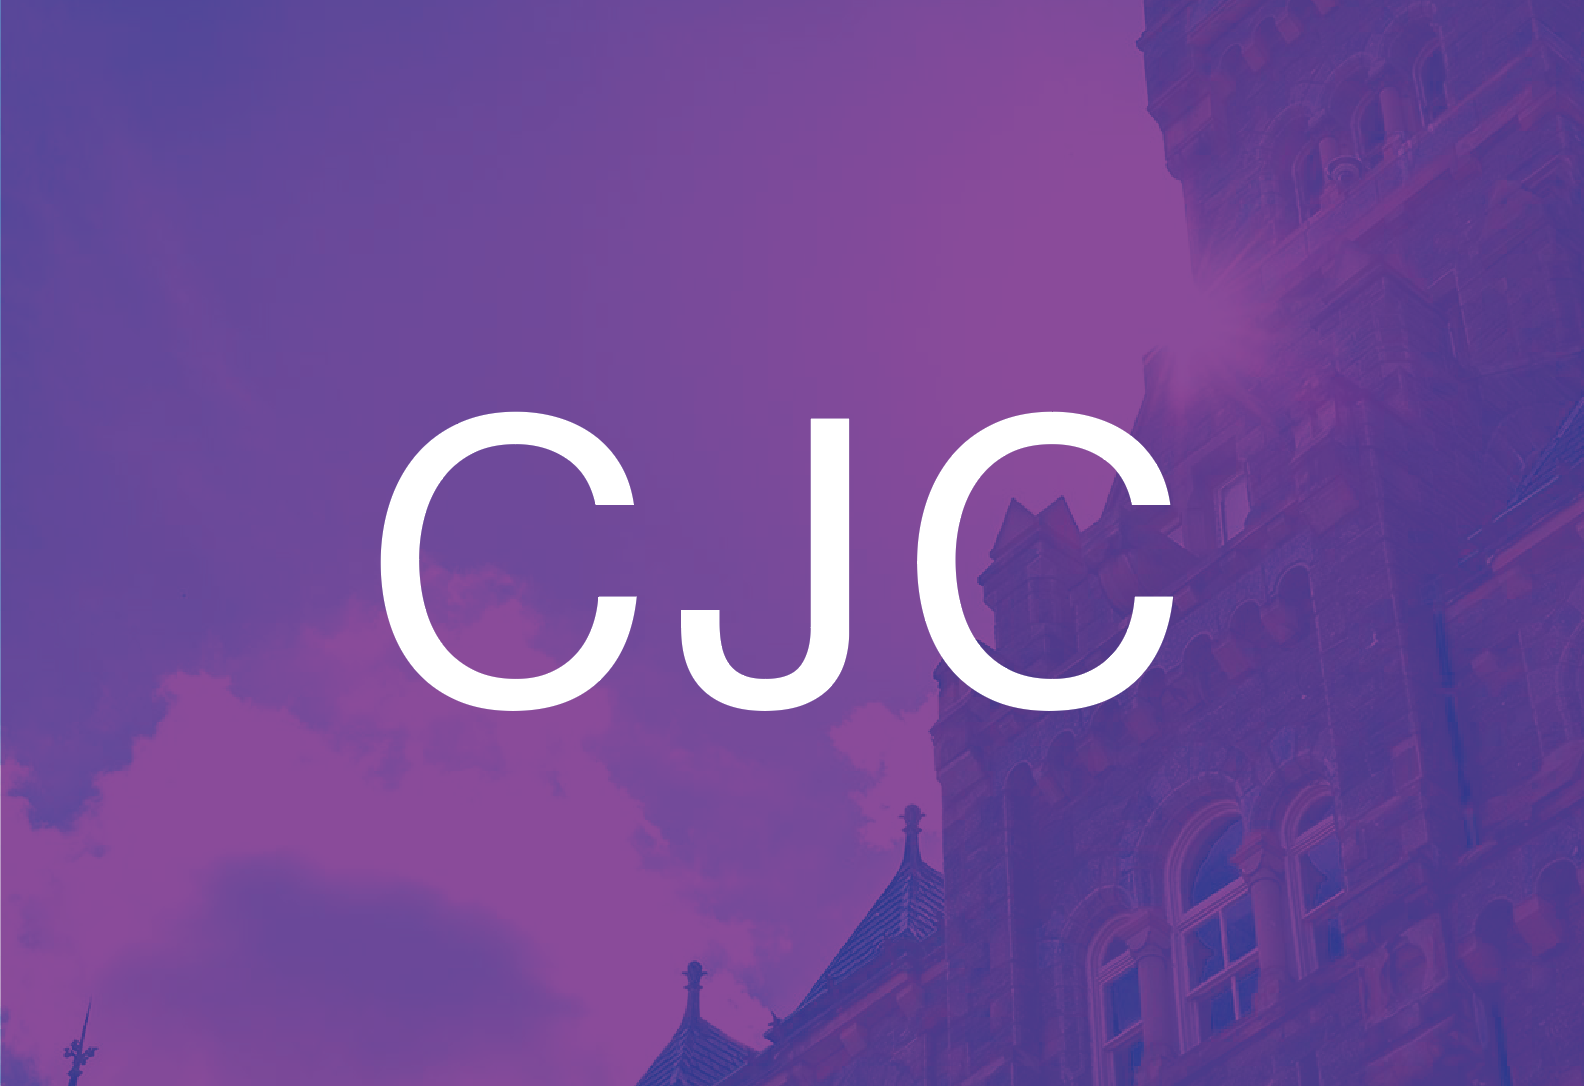 CJC acronym